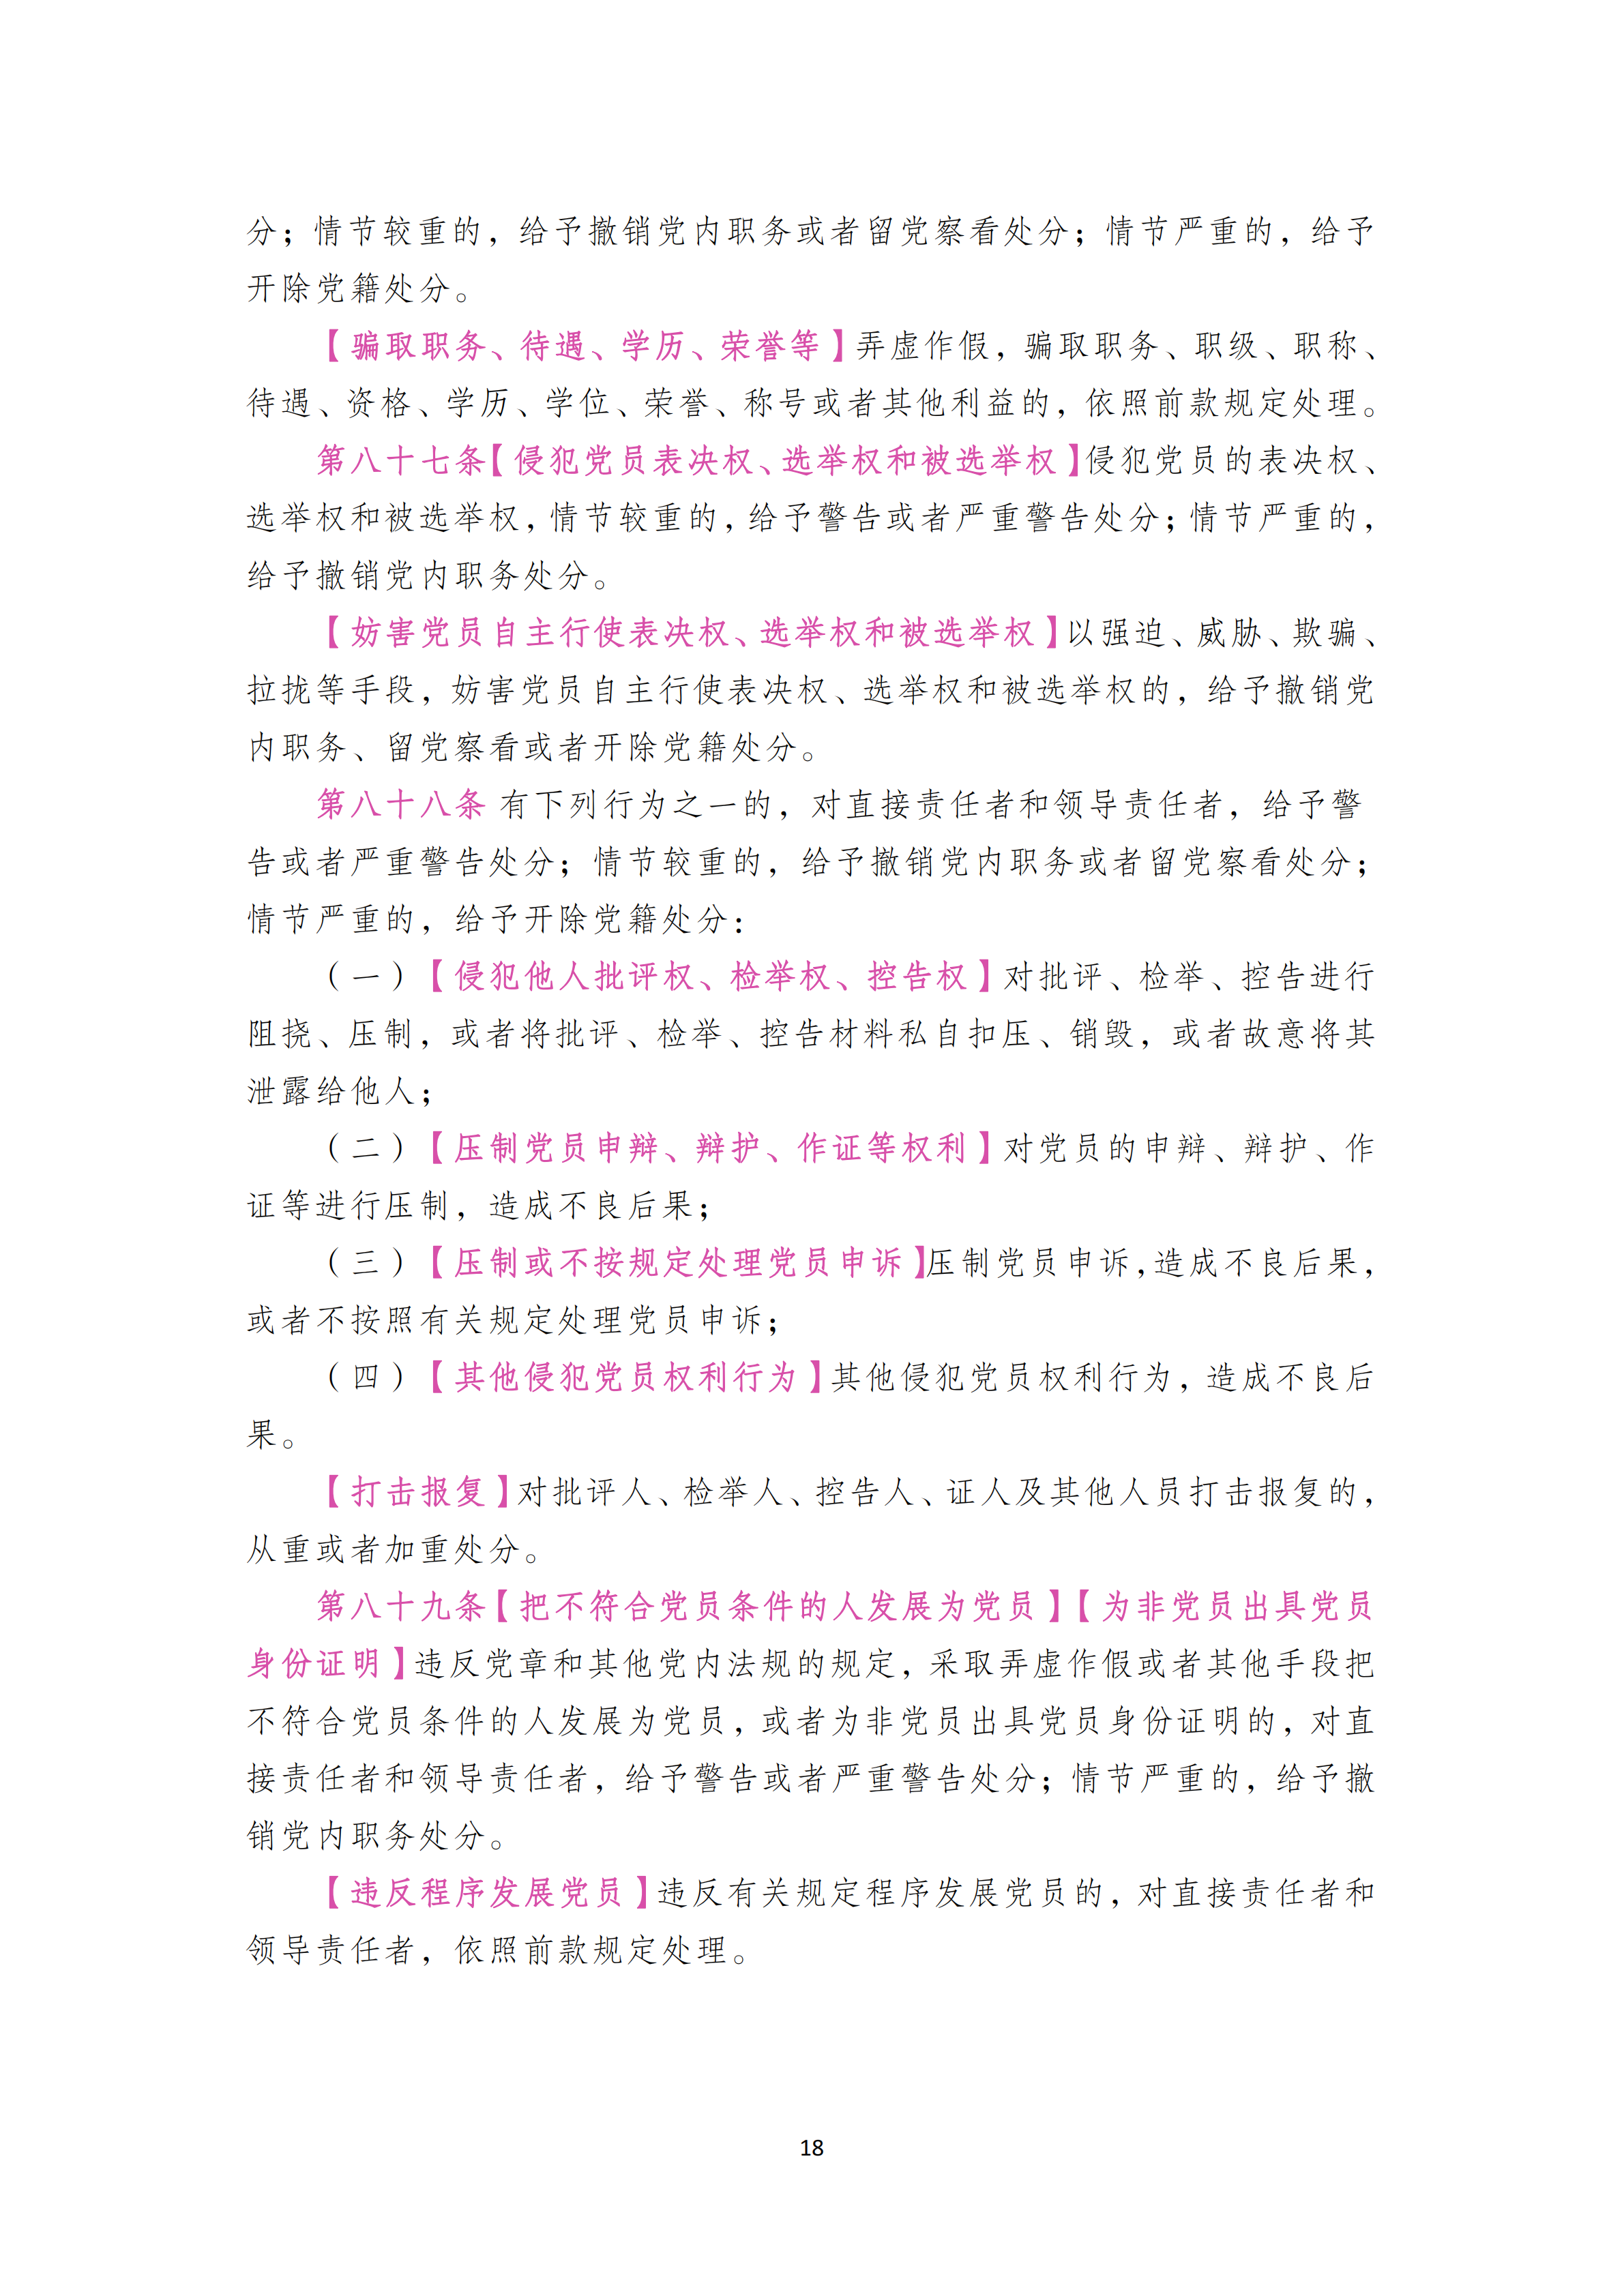 中国共产党纪律处分条例_17.png